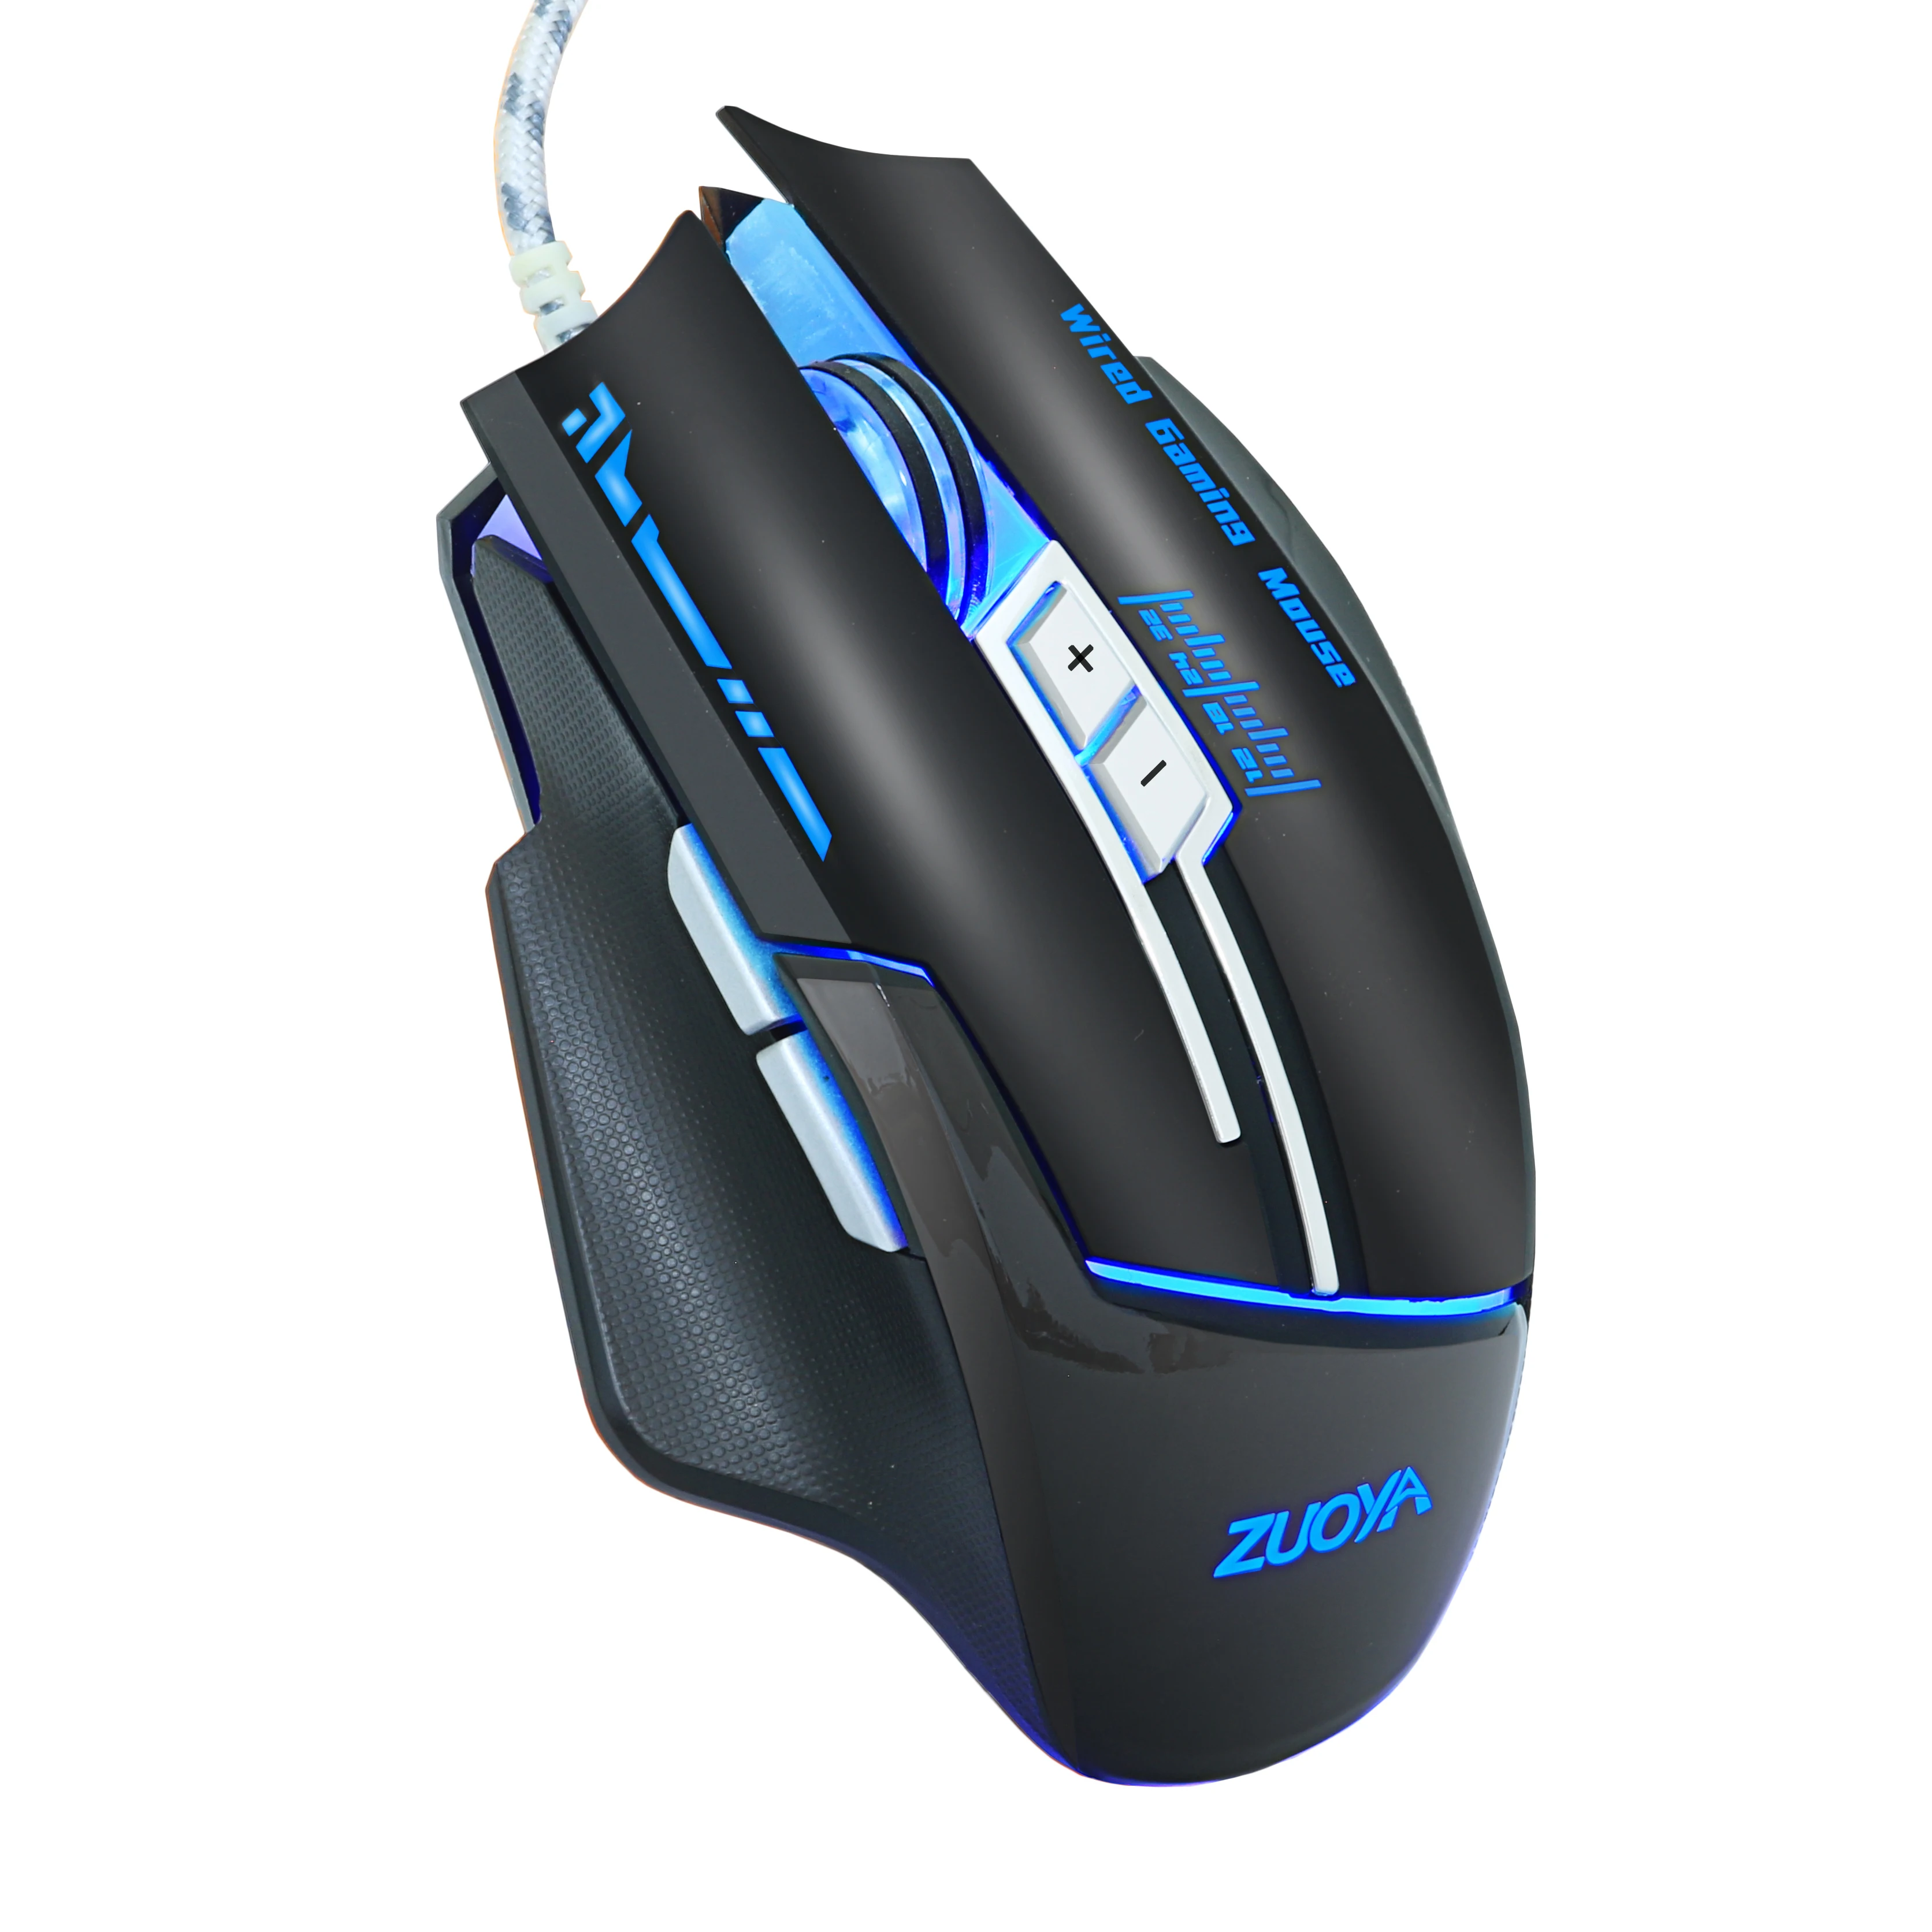 ZUOYA игровая мышь Мыши dpi регулируемые проволочные оптические светодиодный компьютерная мышь USB кабель мышь для портативных ПК профессиональная геймерская игра